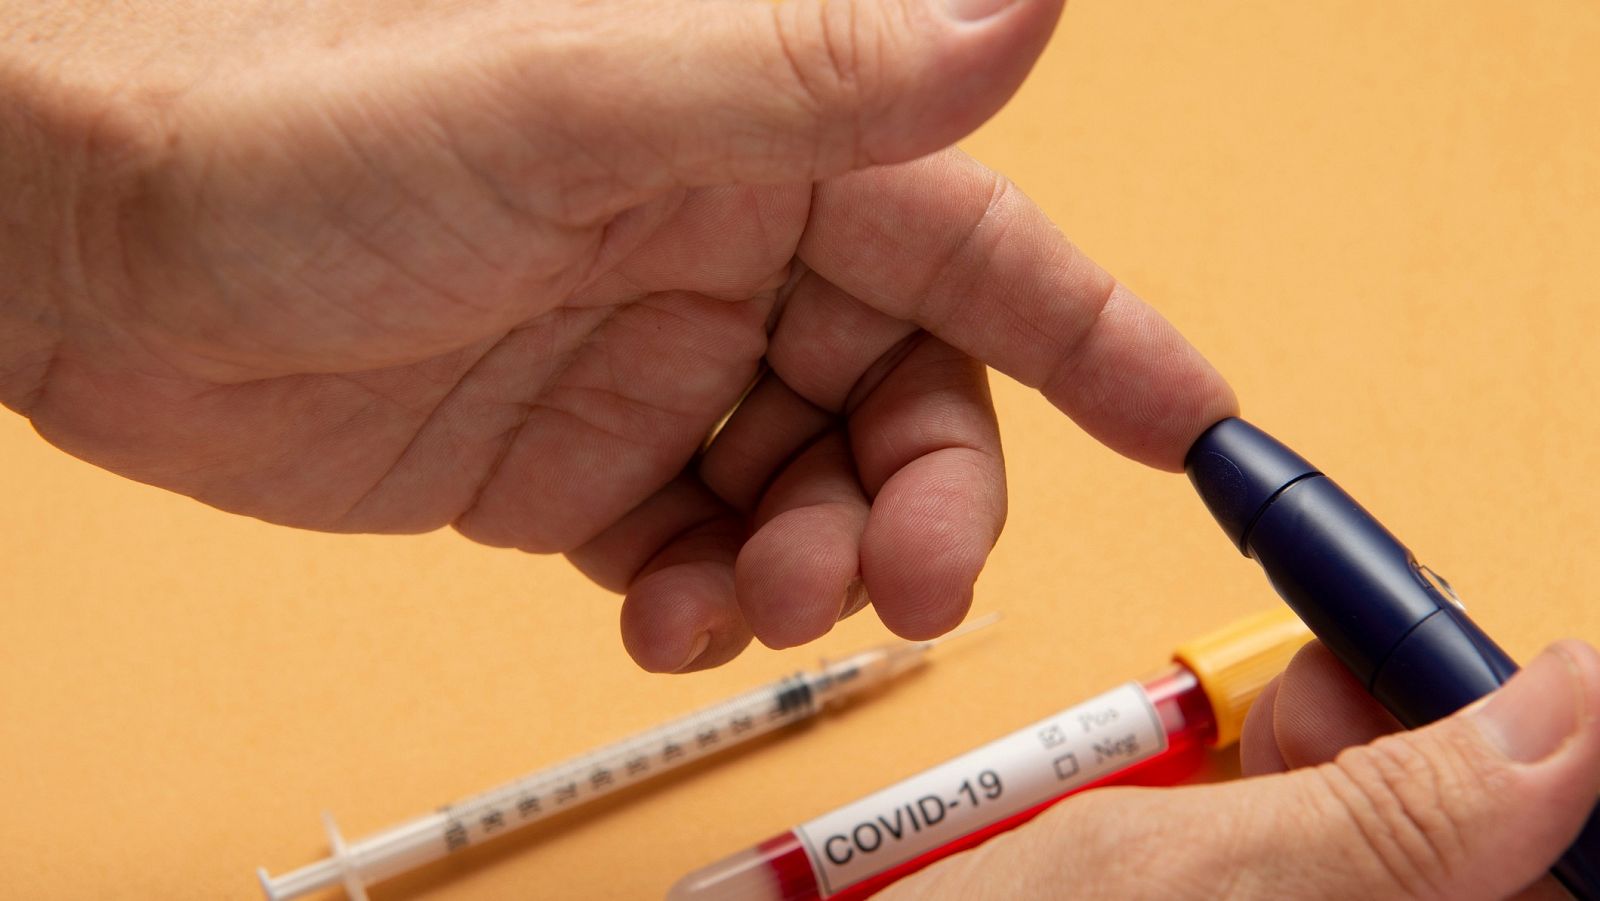 Una persona haciéndose la prueba de glucosa en sangre en la yema del dedo junto a un tubo para análisis con una etiqueta de COVID-19.